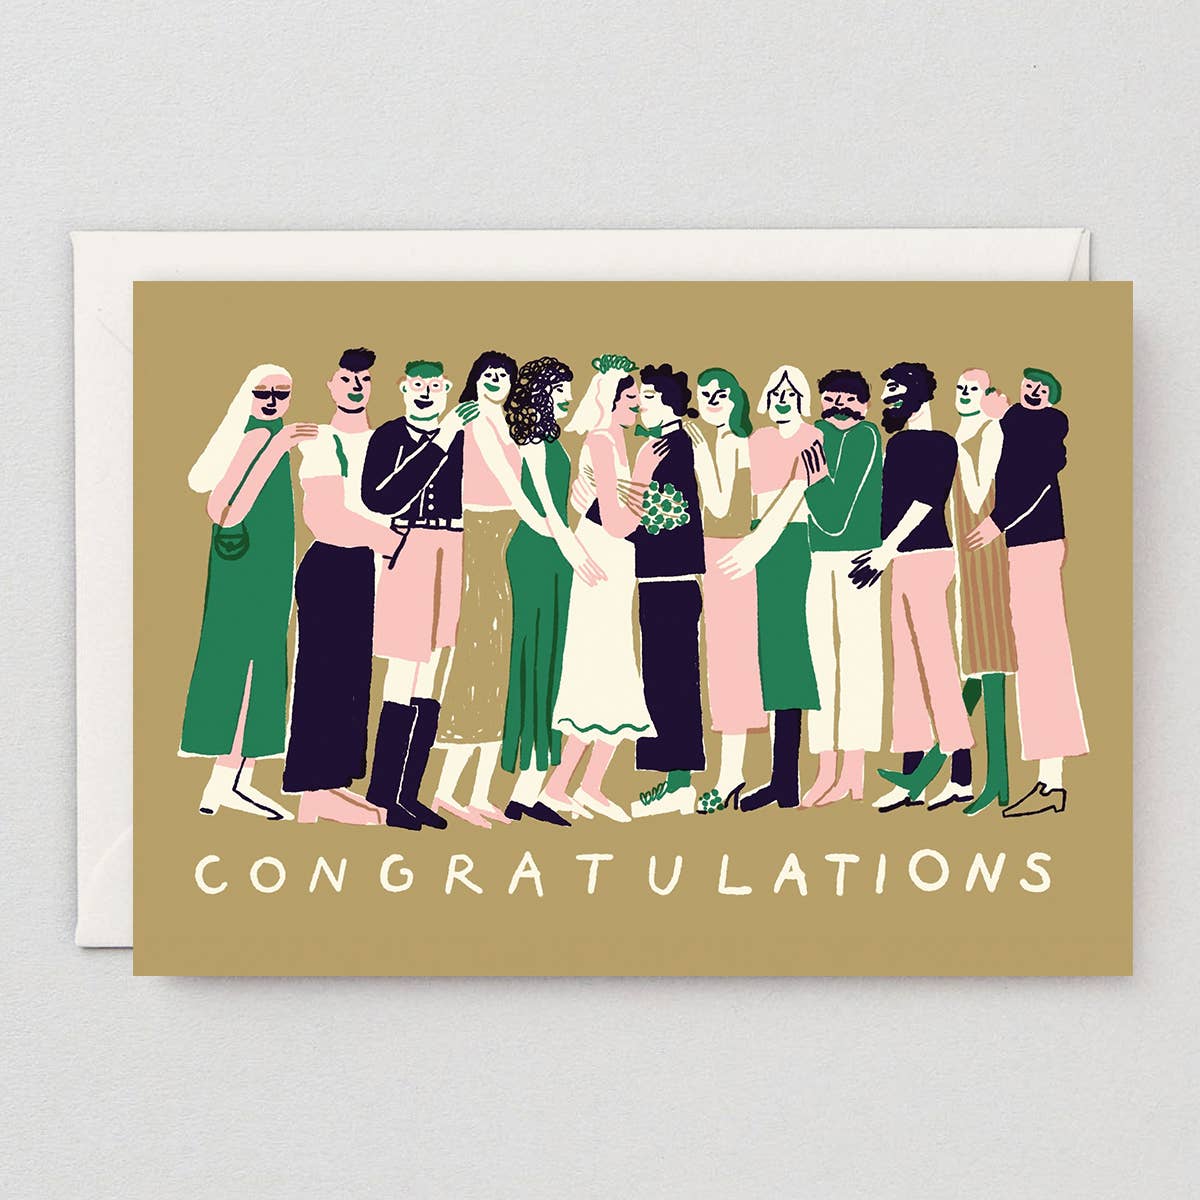 Wrap - 'Congratulations' Greetings Card - Preston ApothecaryWrap